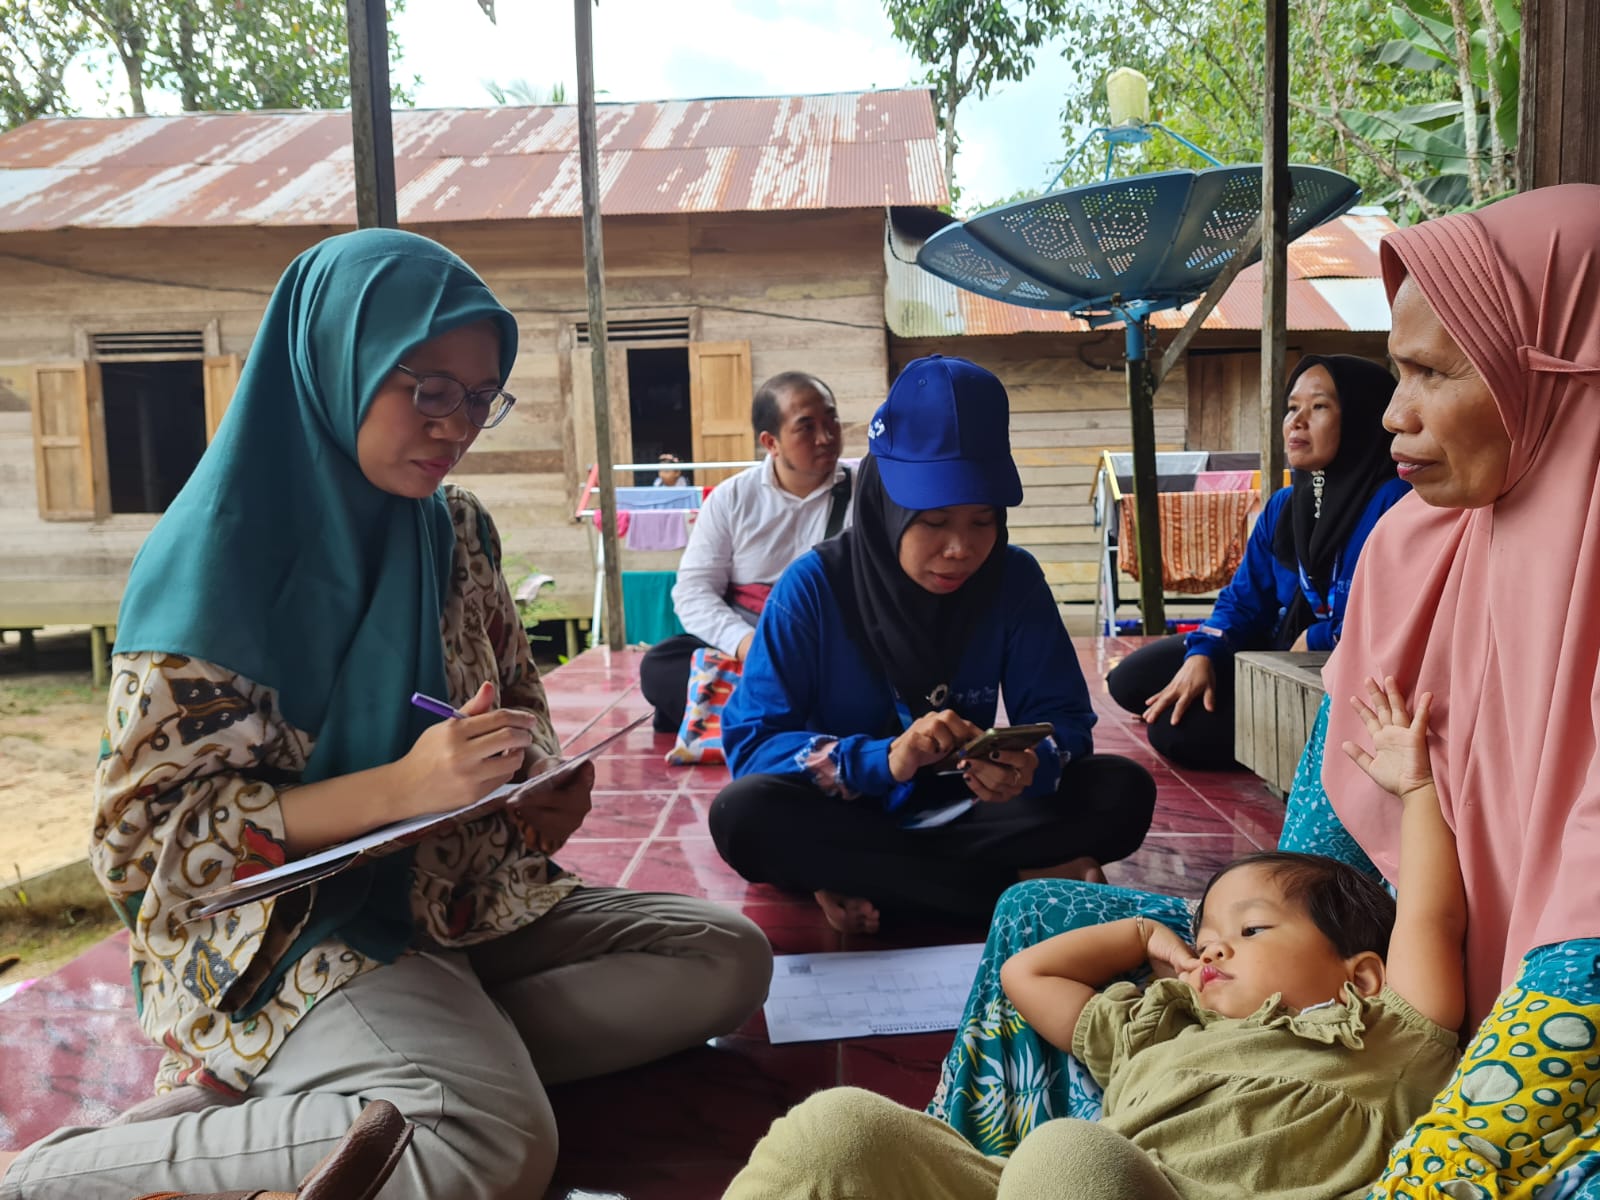 BKKBN Selesaikan 63 Persen Target Pemutakhiran Data Keluarga Indonesia Selama 18 Hari